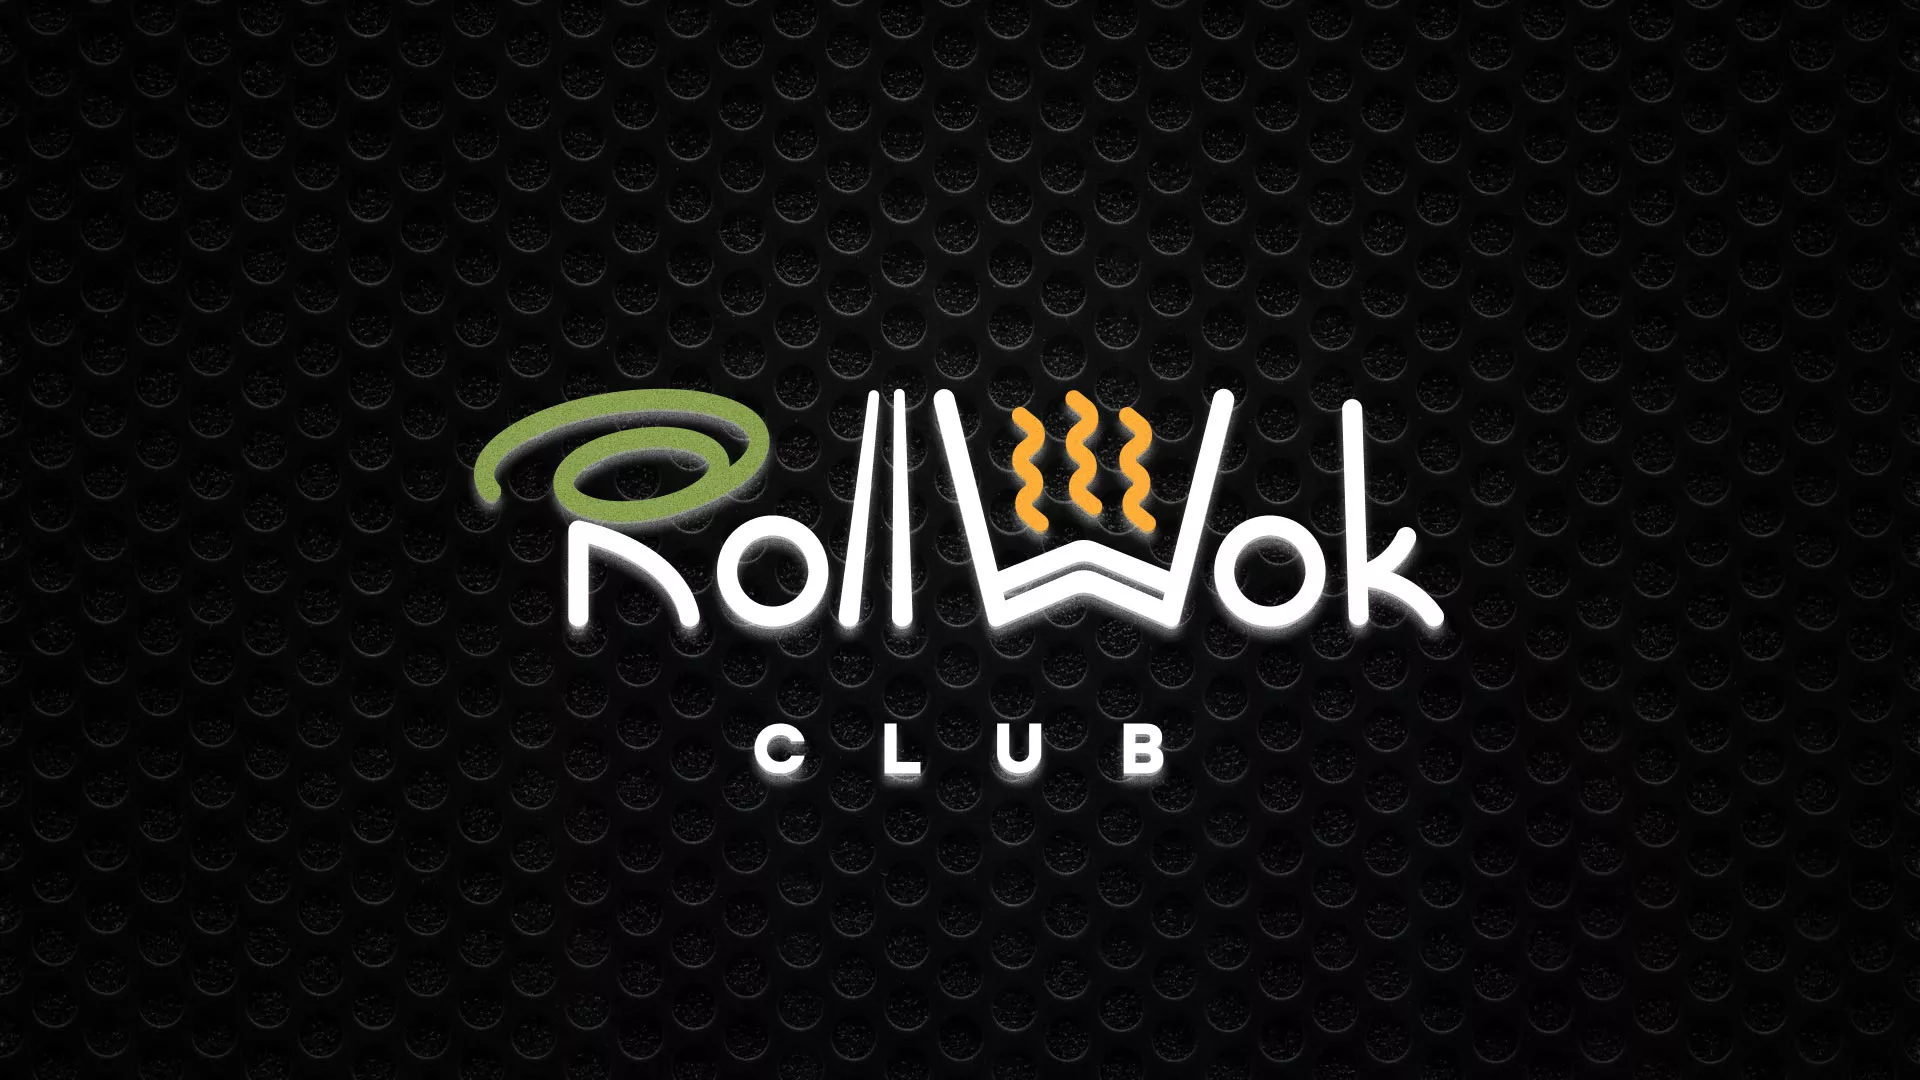 Брендирование торговых точек суши-бара «Roll Wok Club» в Палласовке